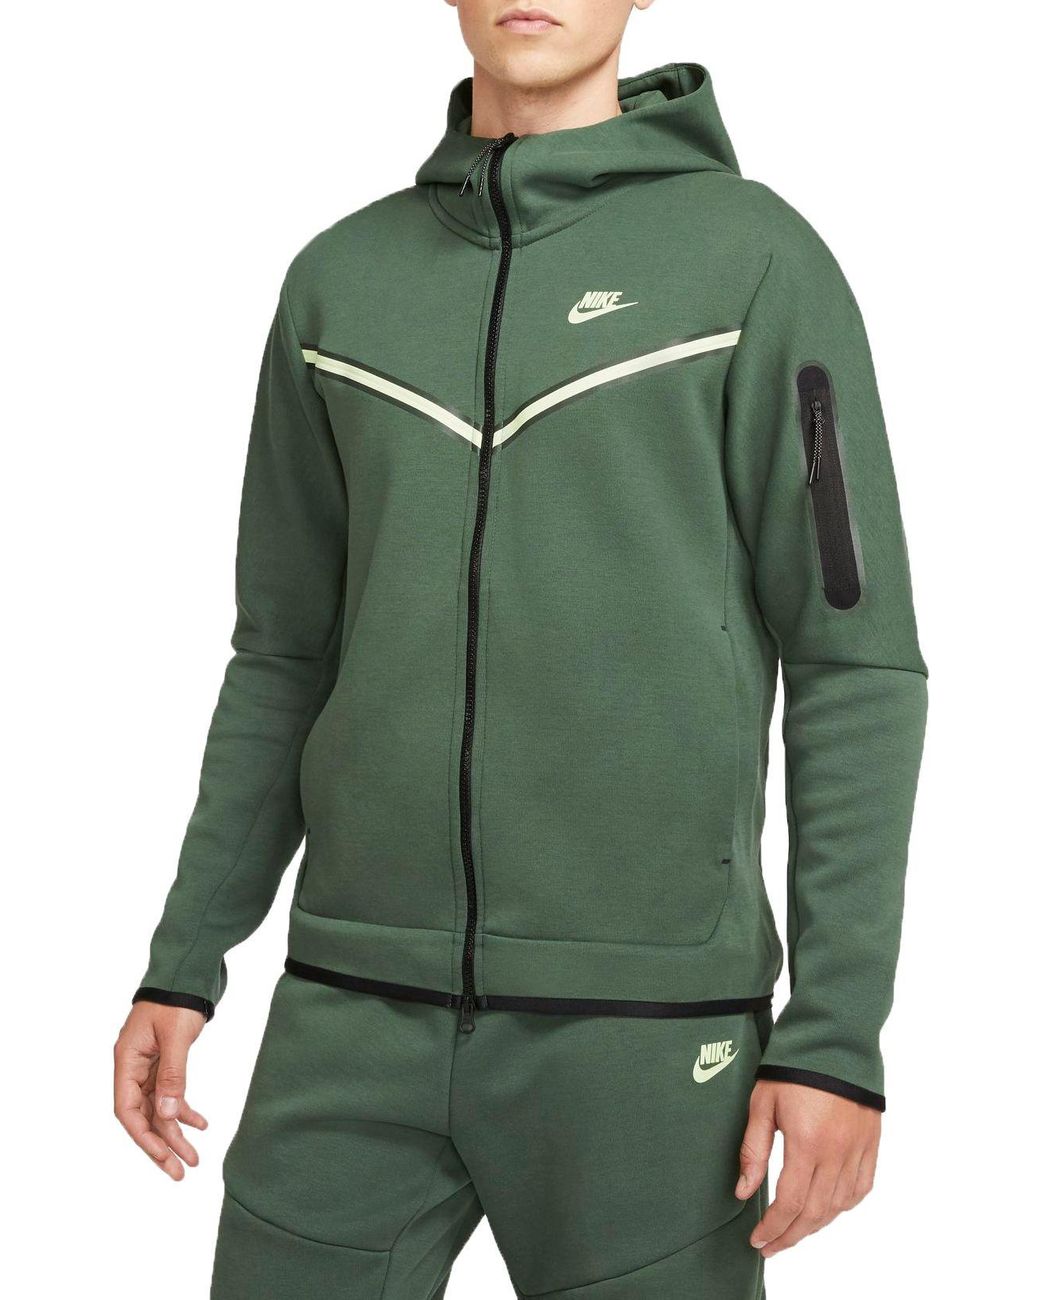 Nike Sportswear Tech Fleece Full Zip Hoodie in Green for Men - Lyst